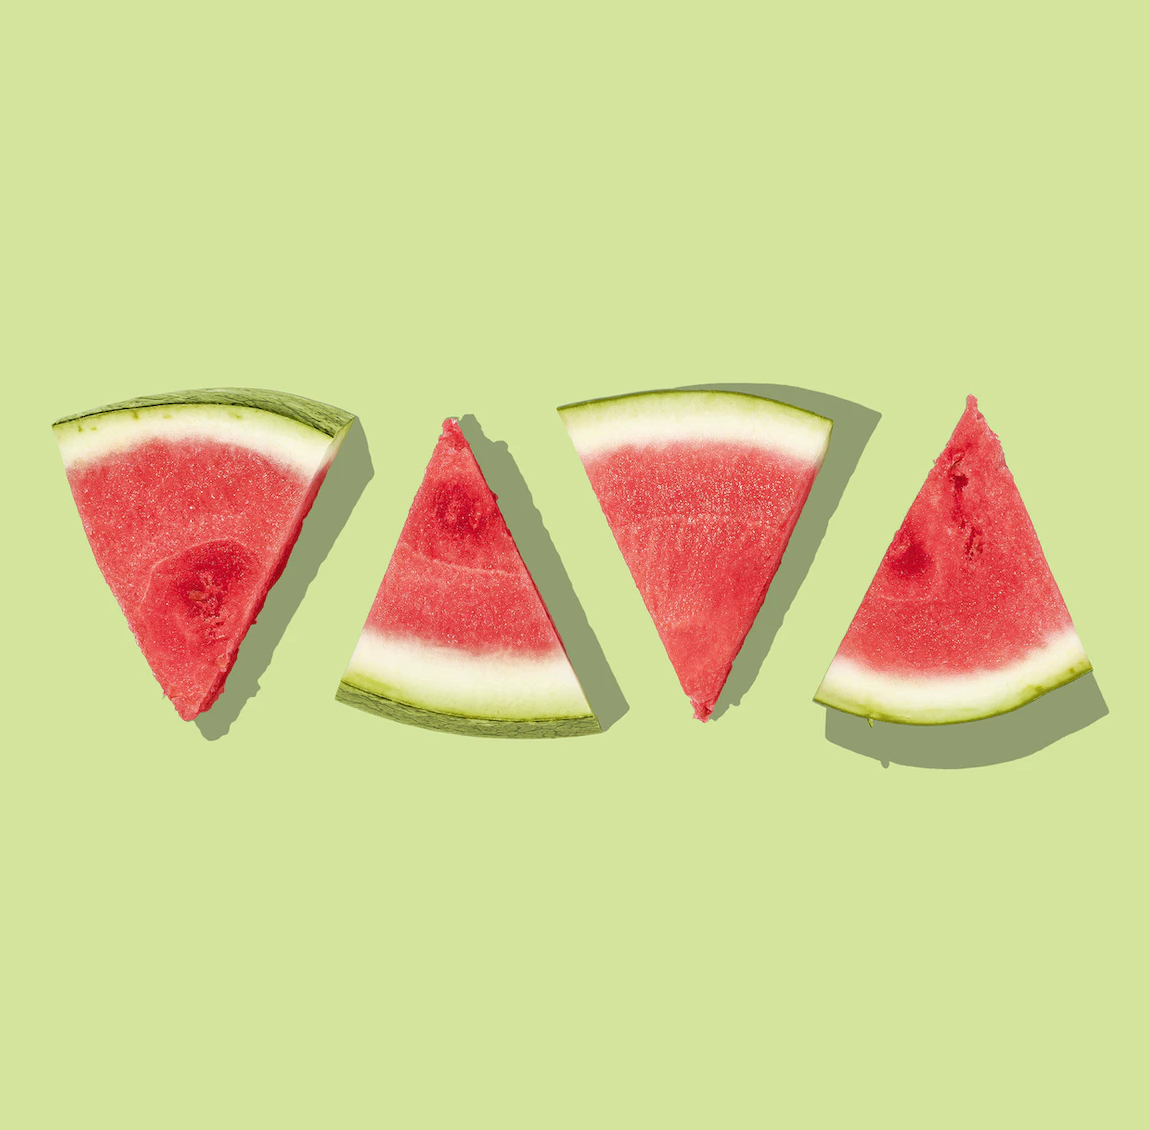 Triangular slices of watermelon.